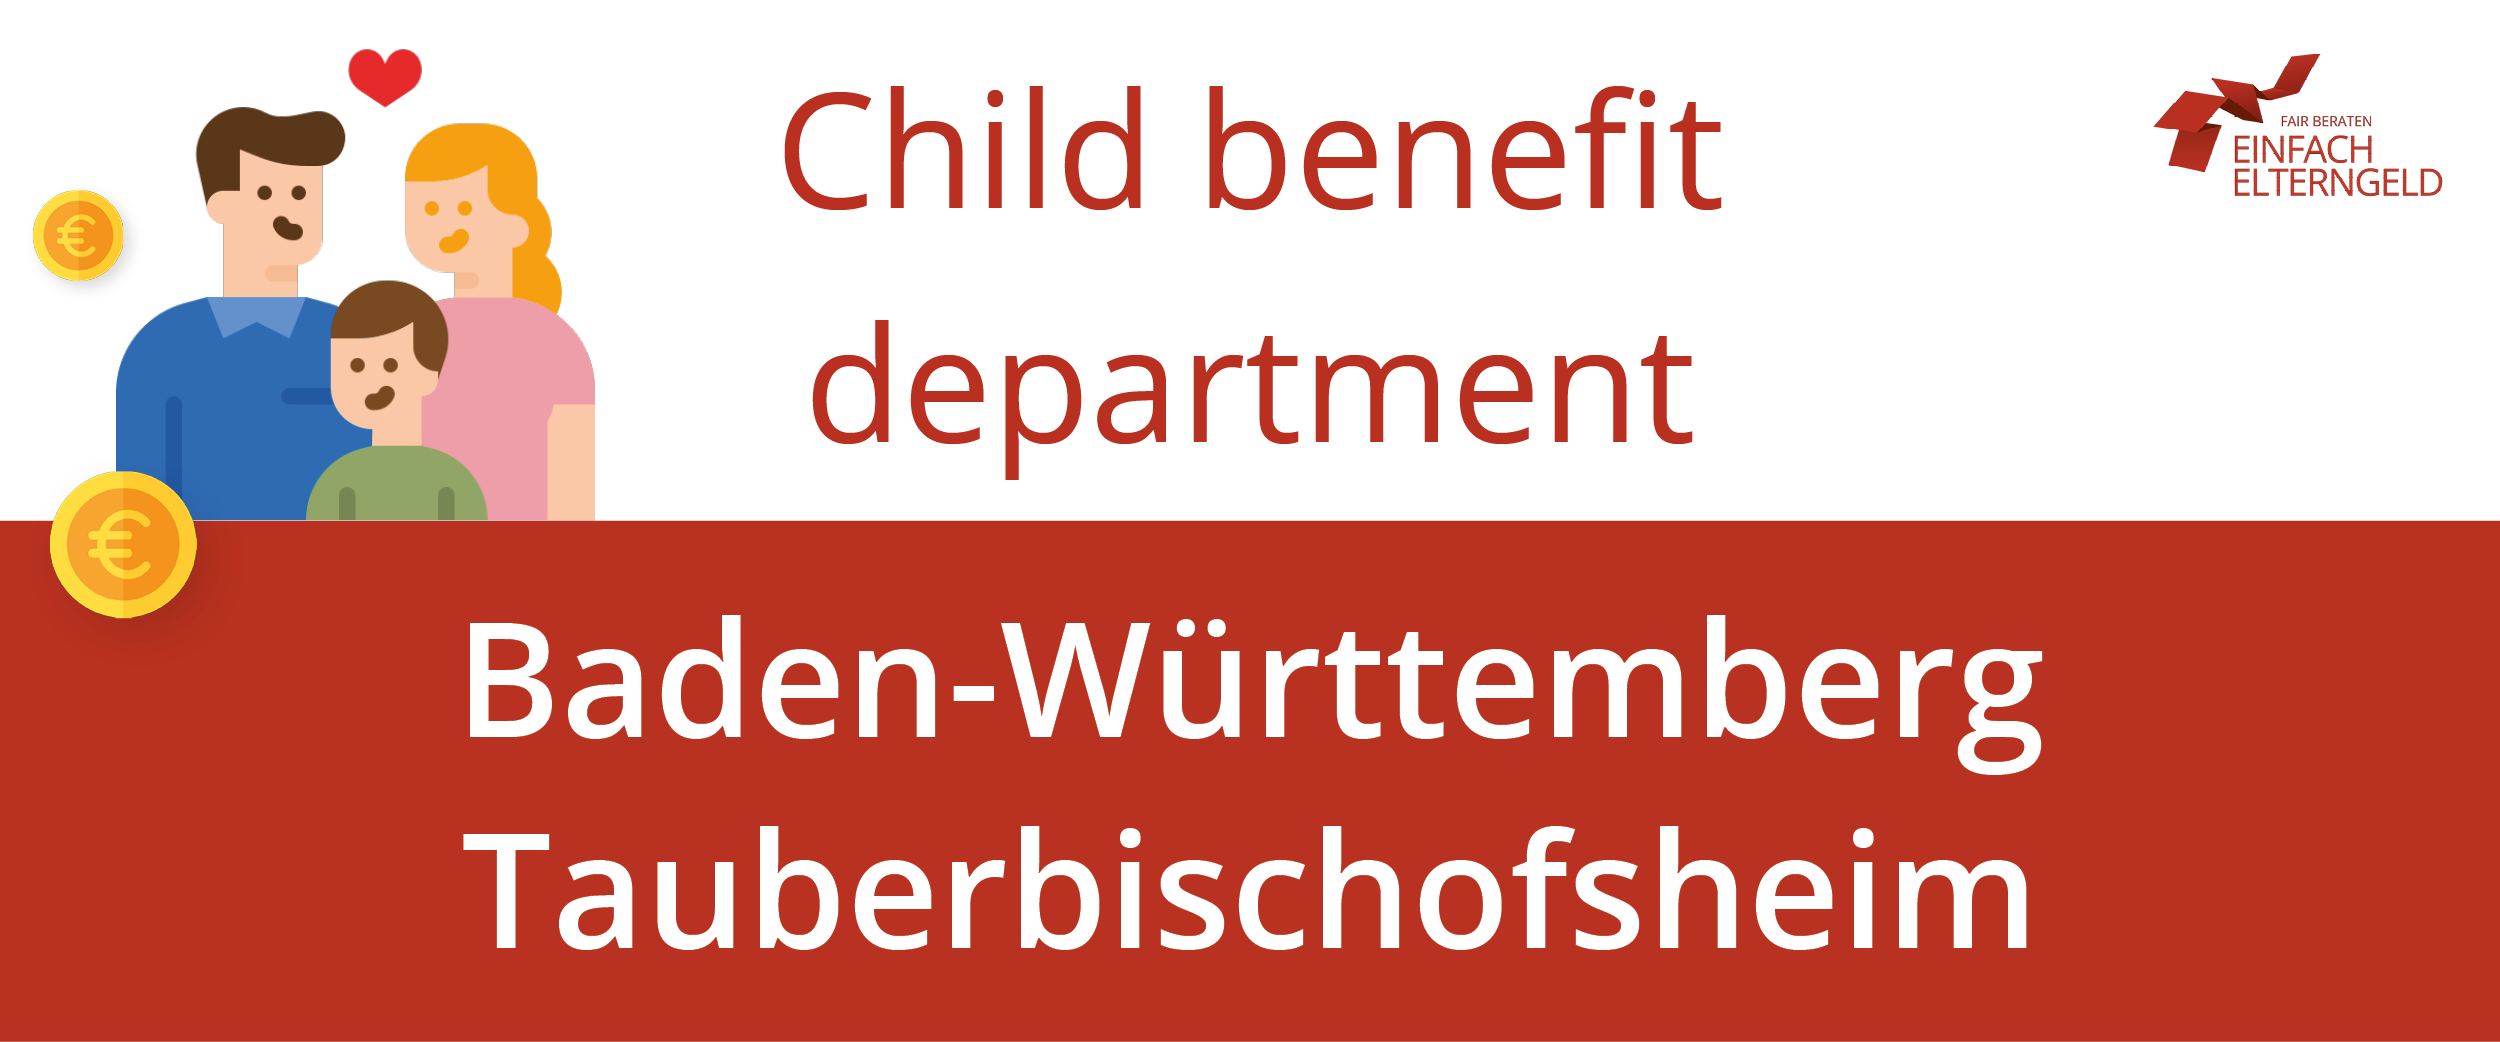 We present you the Child benefit department Baden-Württemberg Tauberbischofsheim.